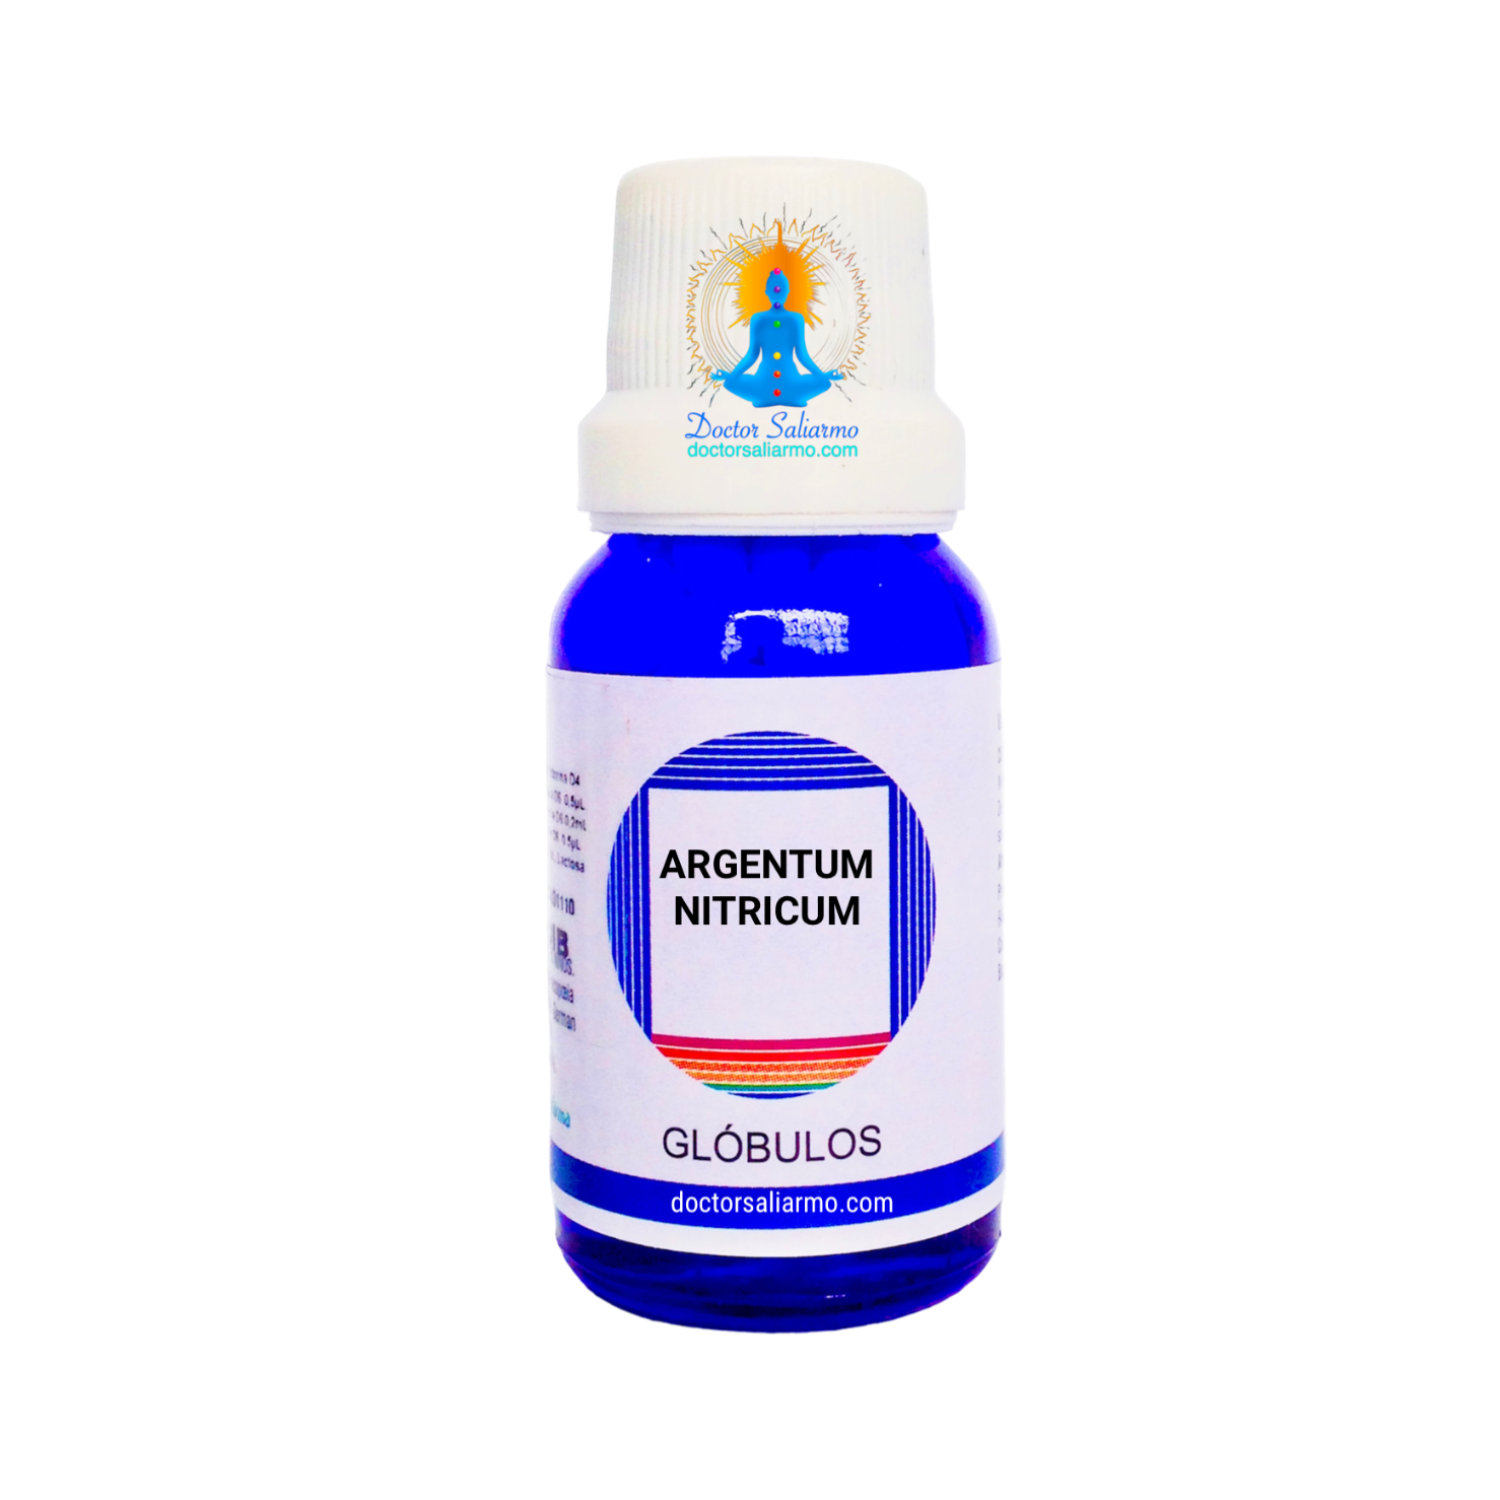 Argentum nitricum CH9 medicamento homeopatico indicado en ulcera peptica, duodenales, esofagicas y gastricas.